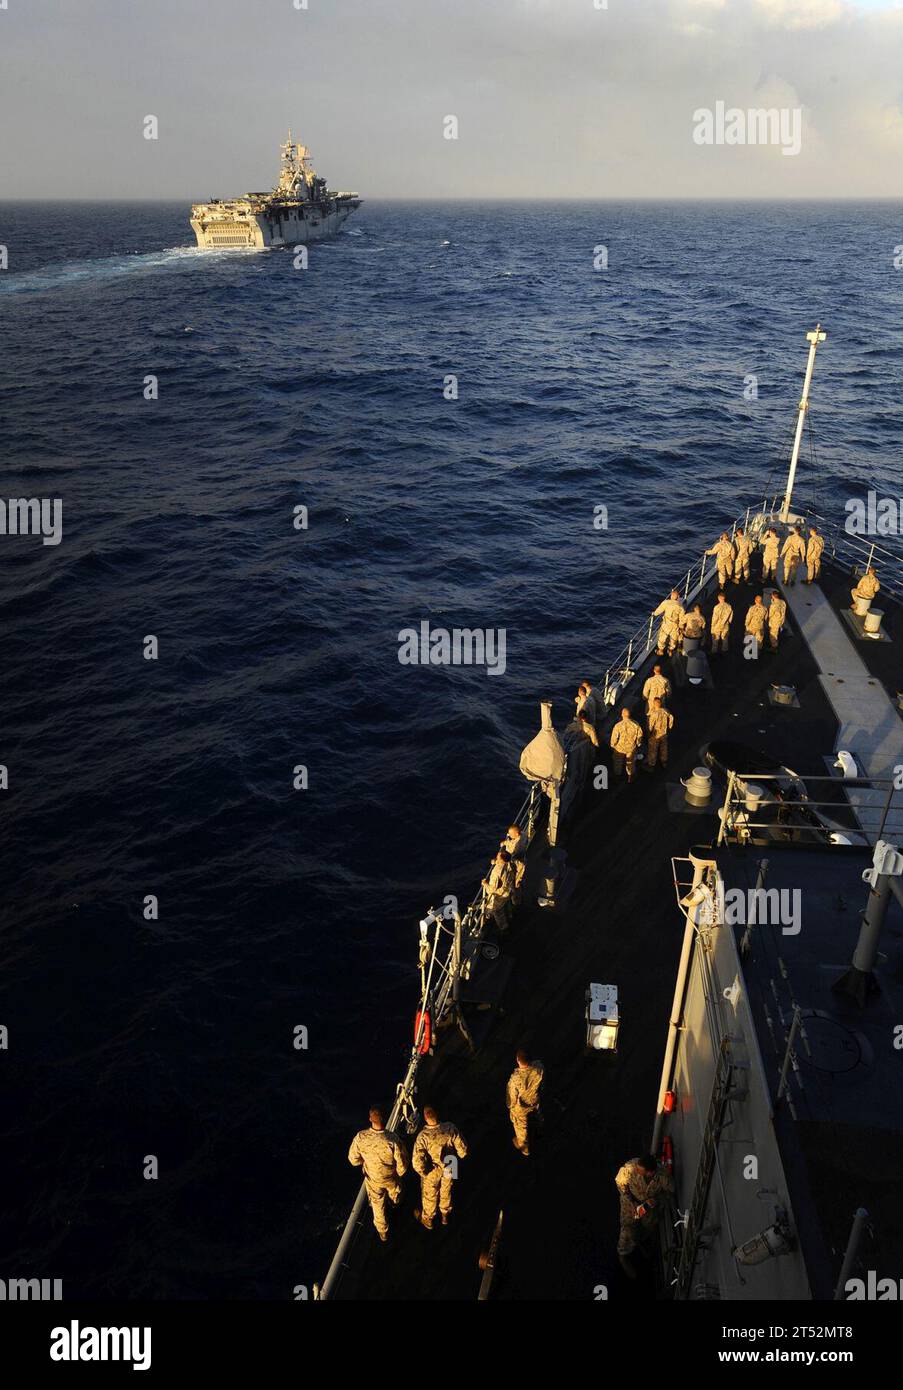 0905185345W-086 ATLANTISCHER OZEAN (18. Mai 2009) Marines der 22nd Marine Expeditionary Unit (22 MEU) beobachten von der foc'sle des Amphibiendockschiffes USS Fort McHenry (LSD 43), als sie auf dem amphibischen Angriffsschiff USS Bataan (LHD 5) landen. Fort McHenry befindet sich auf einem geplanten Einsatz mit der Bataan Amphibious Readiness Group (ARG), der die maritimen Sicherheitseinsätze in den Zuständigkeitsbereichen der 5. Und 6. US-Flotte unterstützt. Marineblau Stockfoto